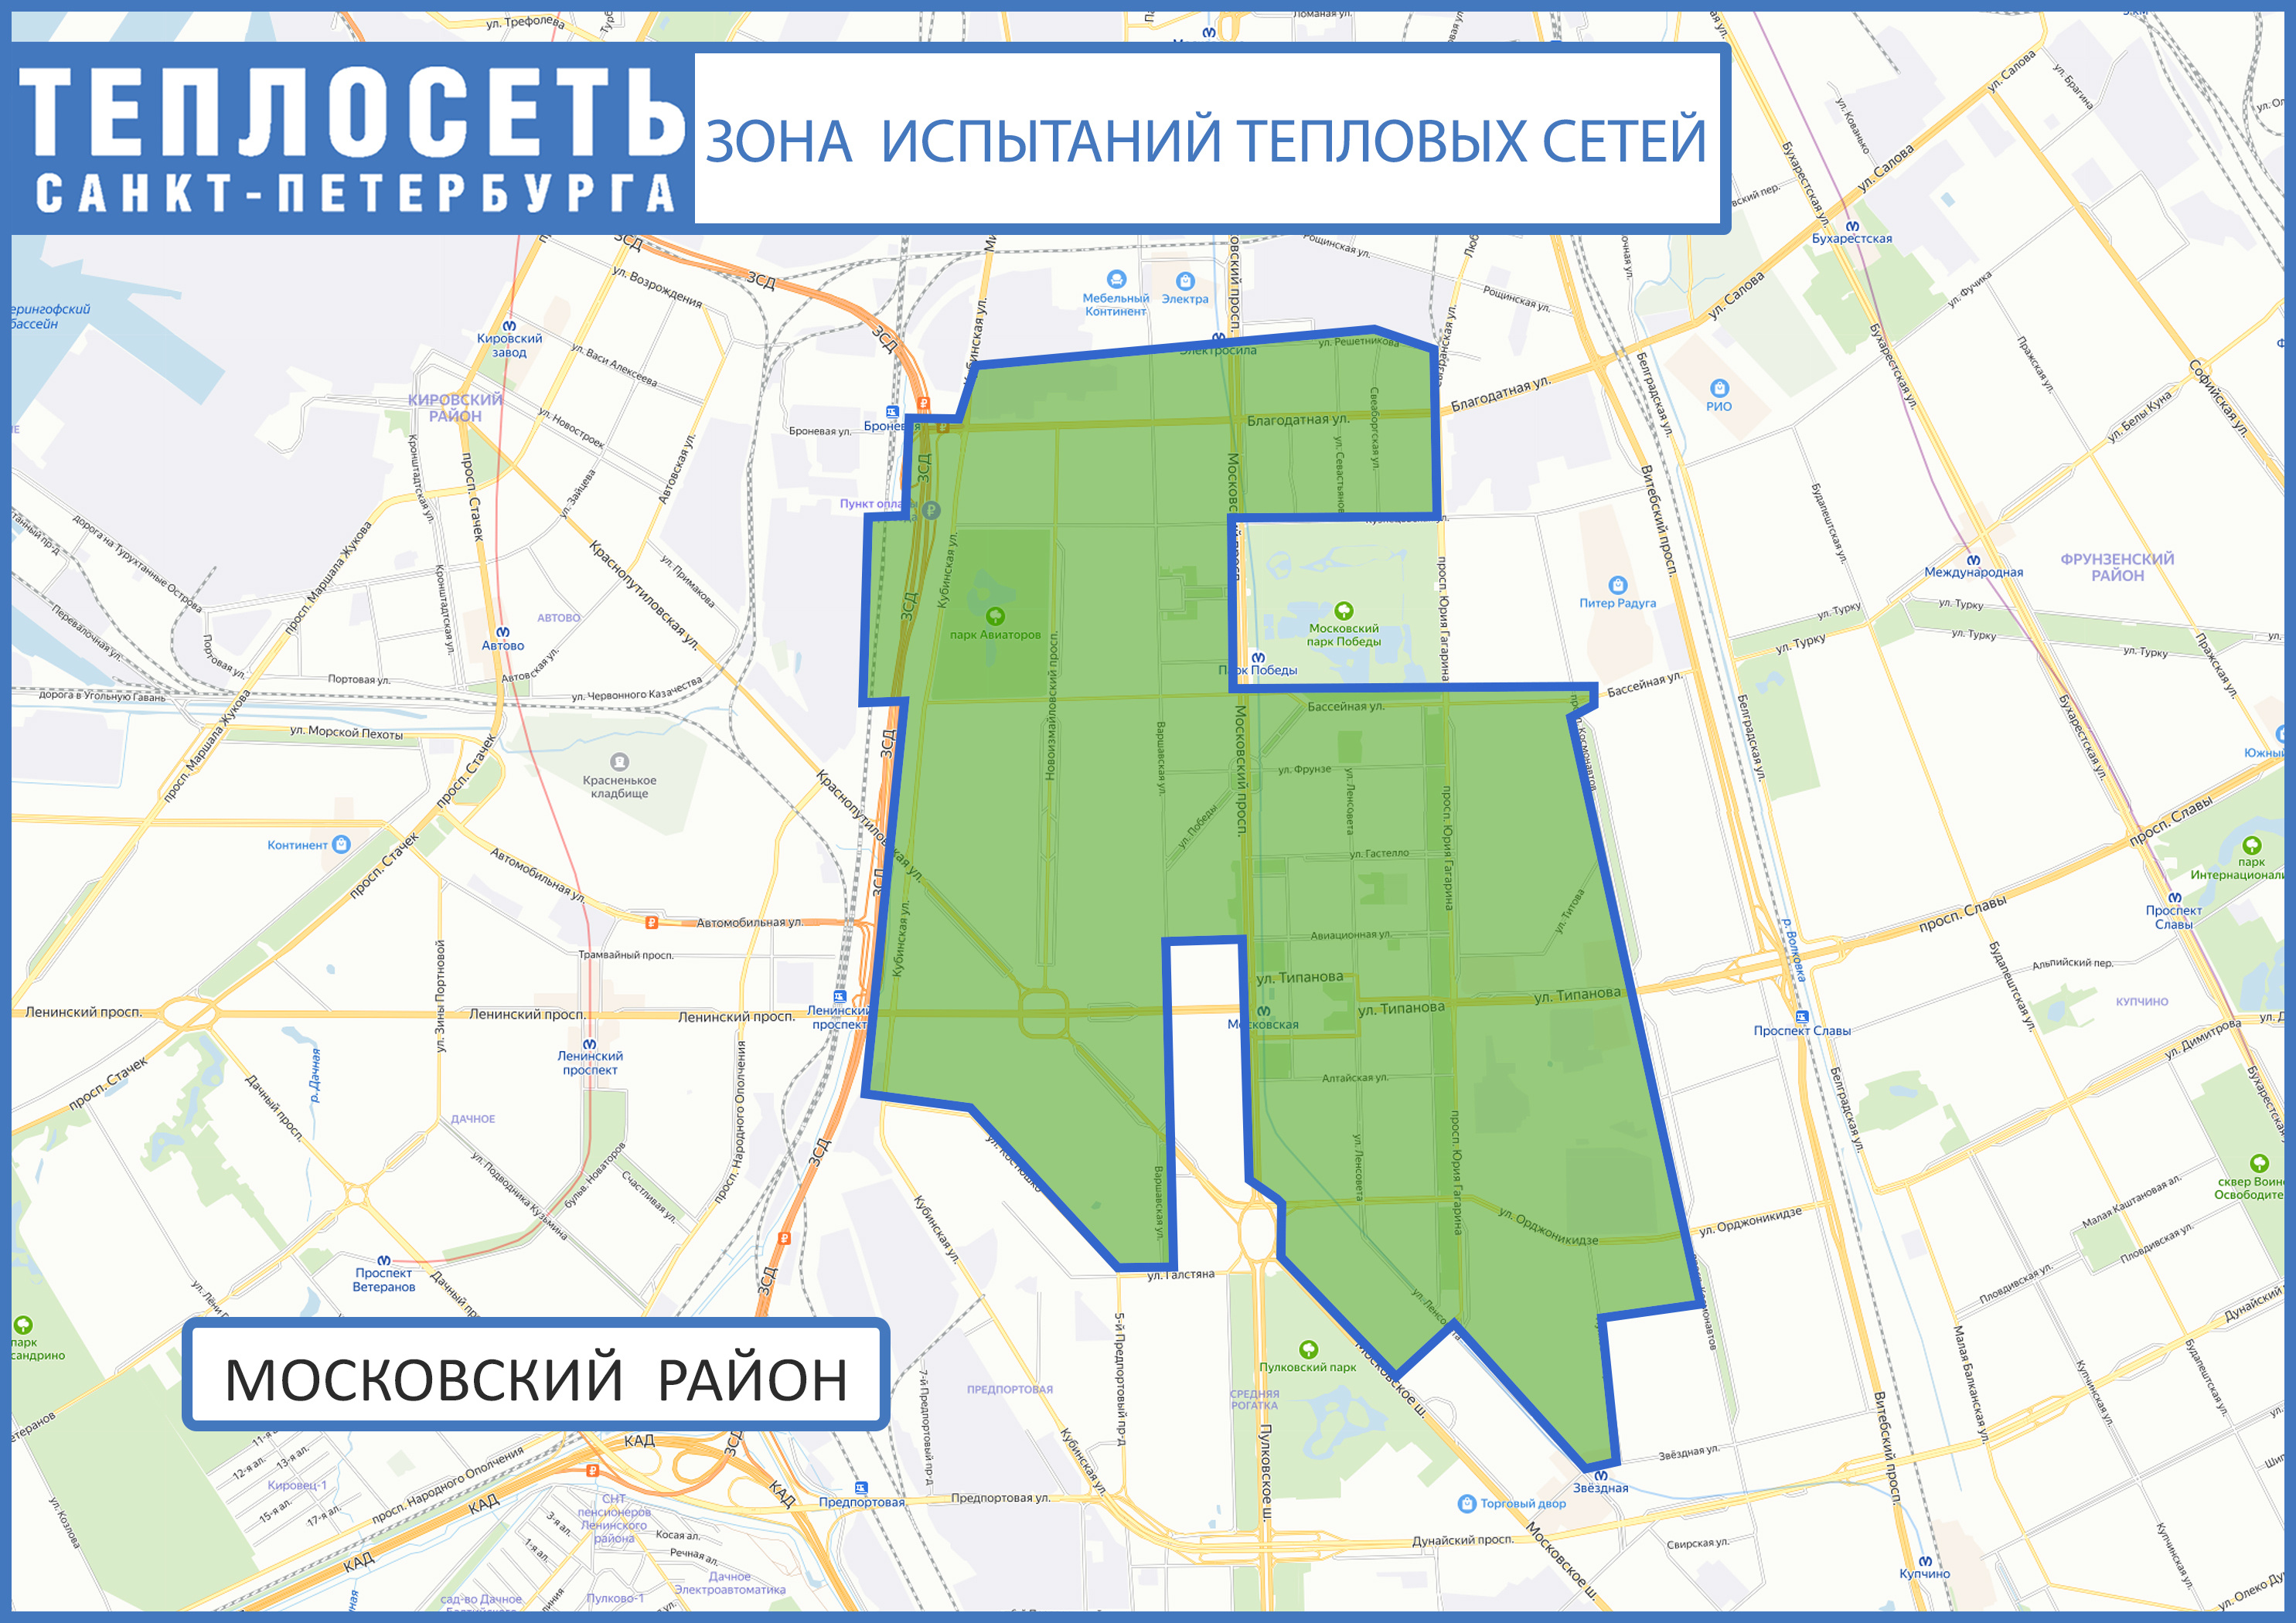 Испытания сетей начинаются в Московском районе, воды не будет до 6 июня